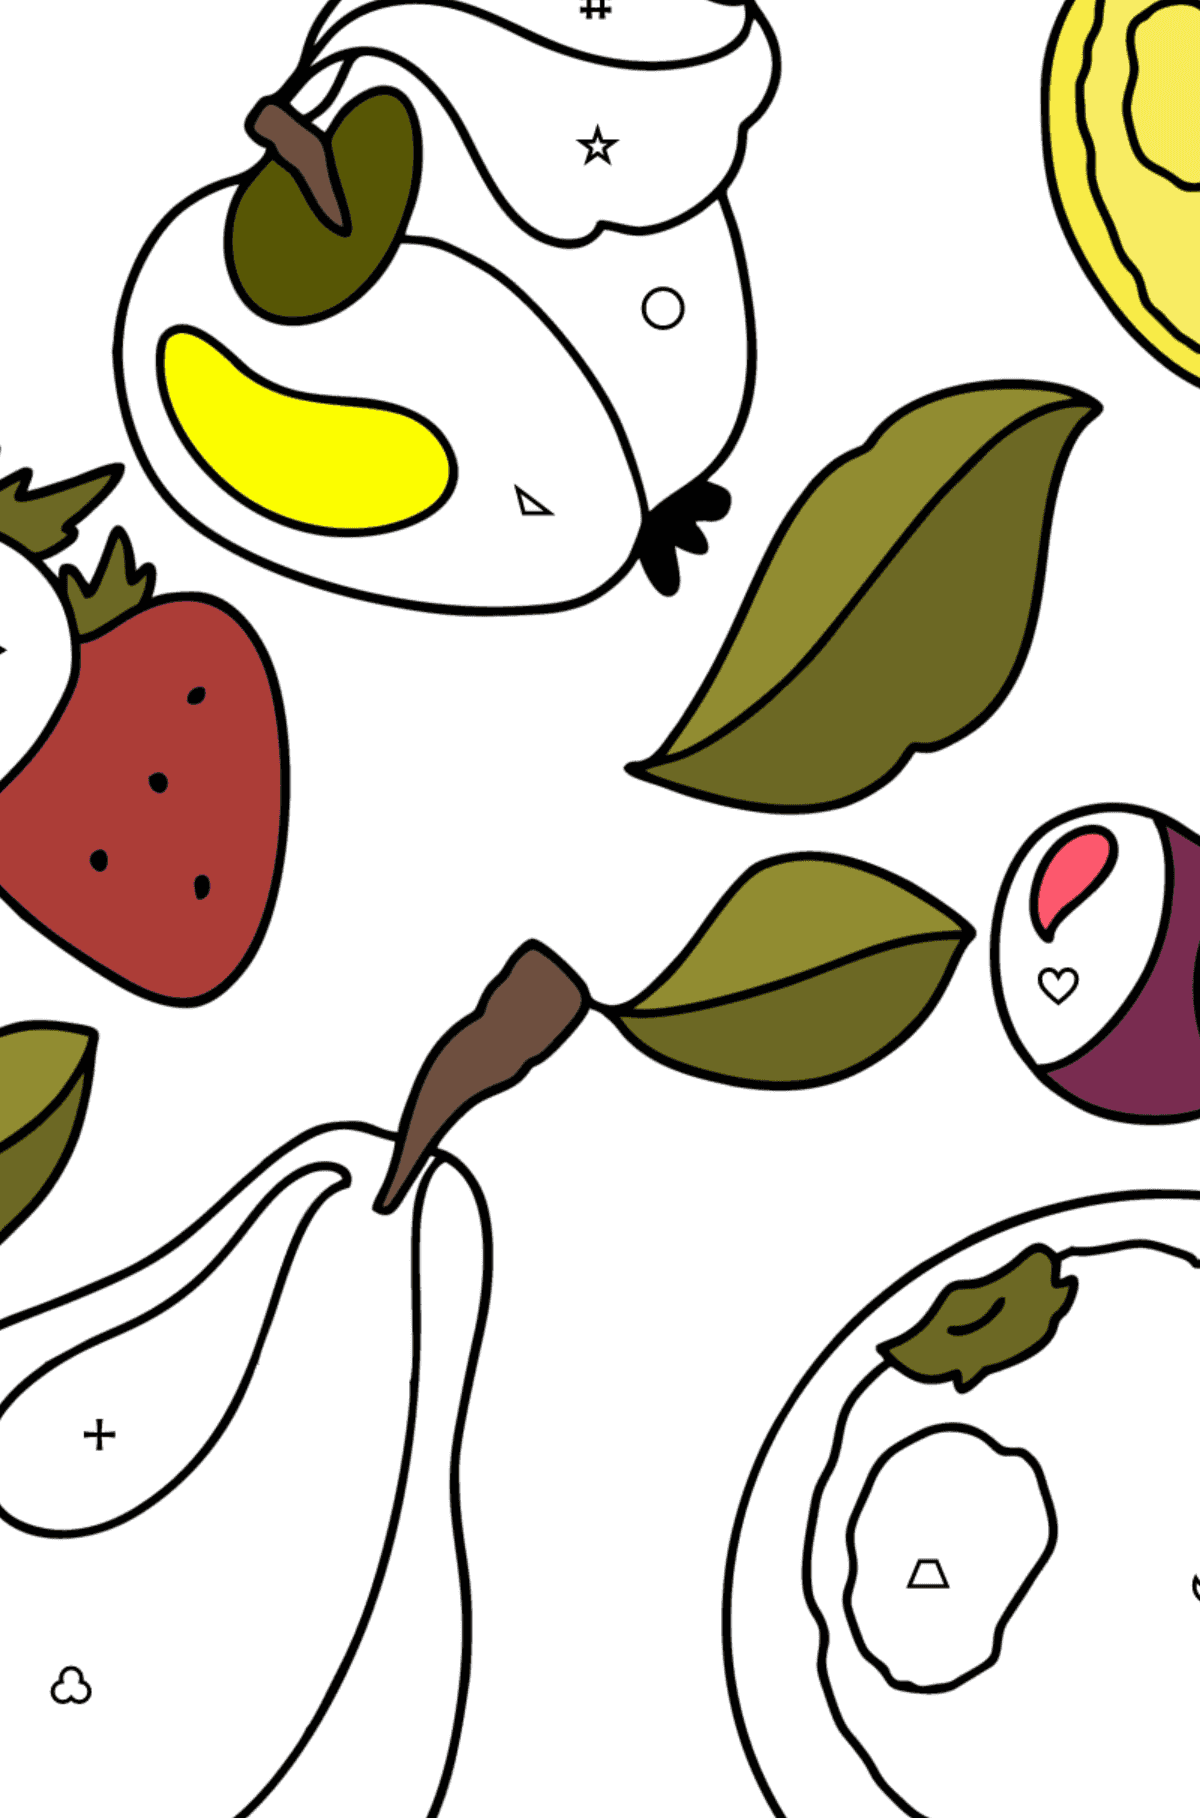 Coloriage Ensemble de fruits 1 - Coloriage par Symboles pour les Enfants